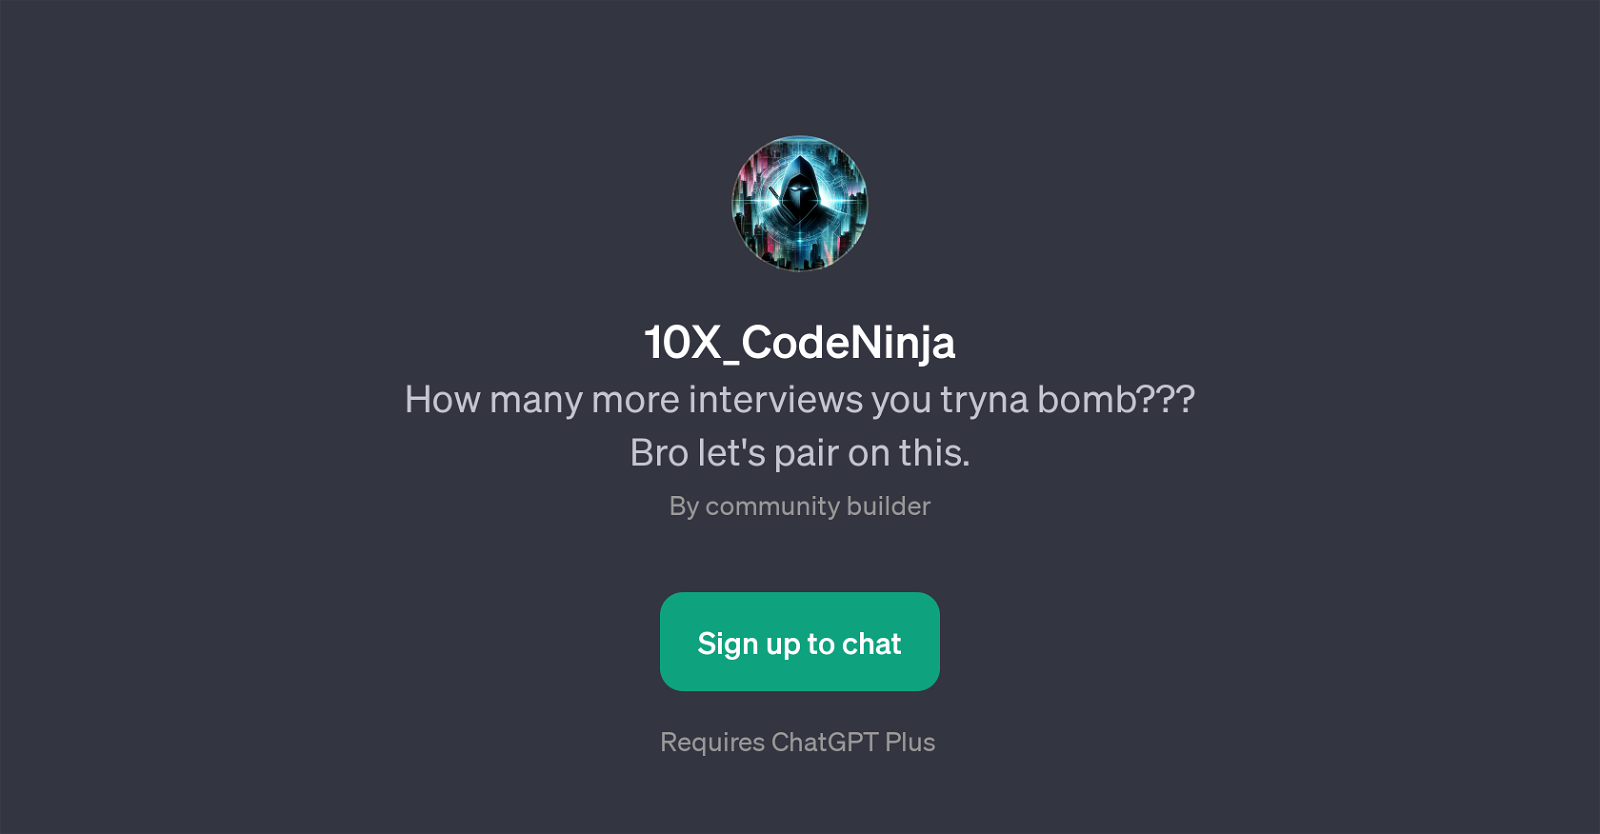 10X_CodeNinja website